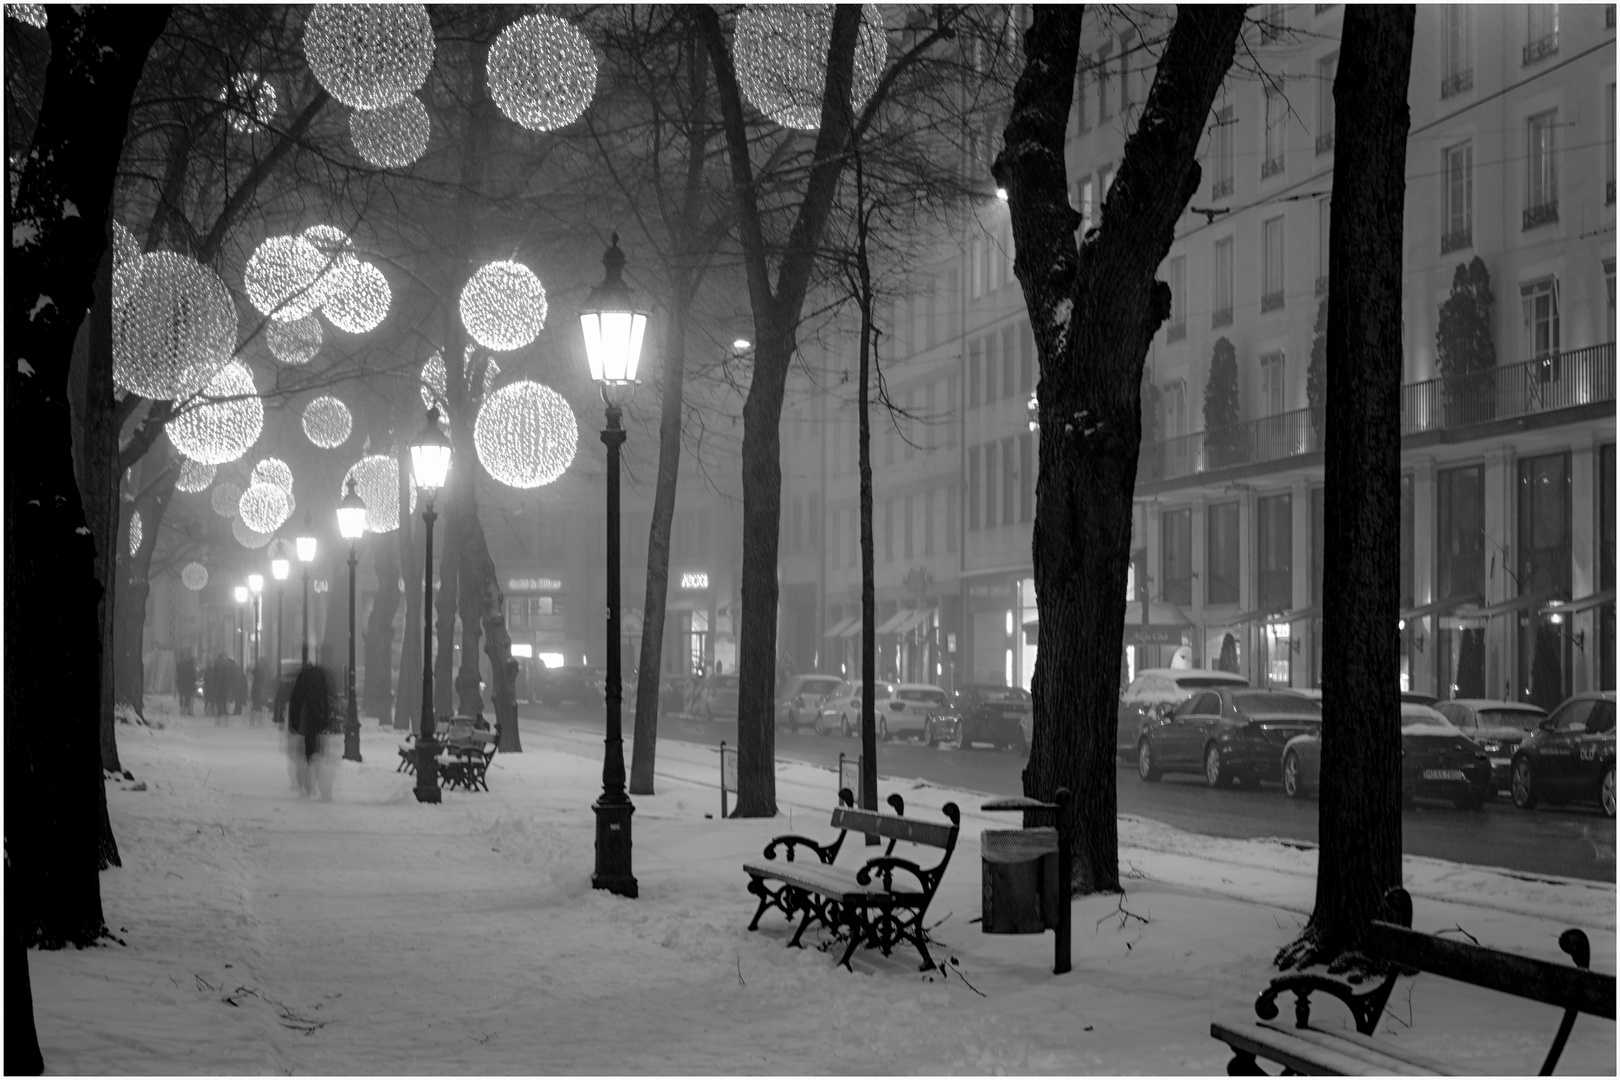 Winteratmosphäre in München am Promenadeplatz